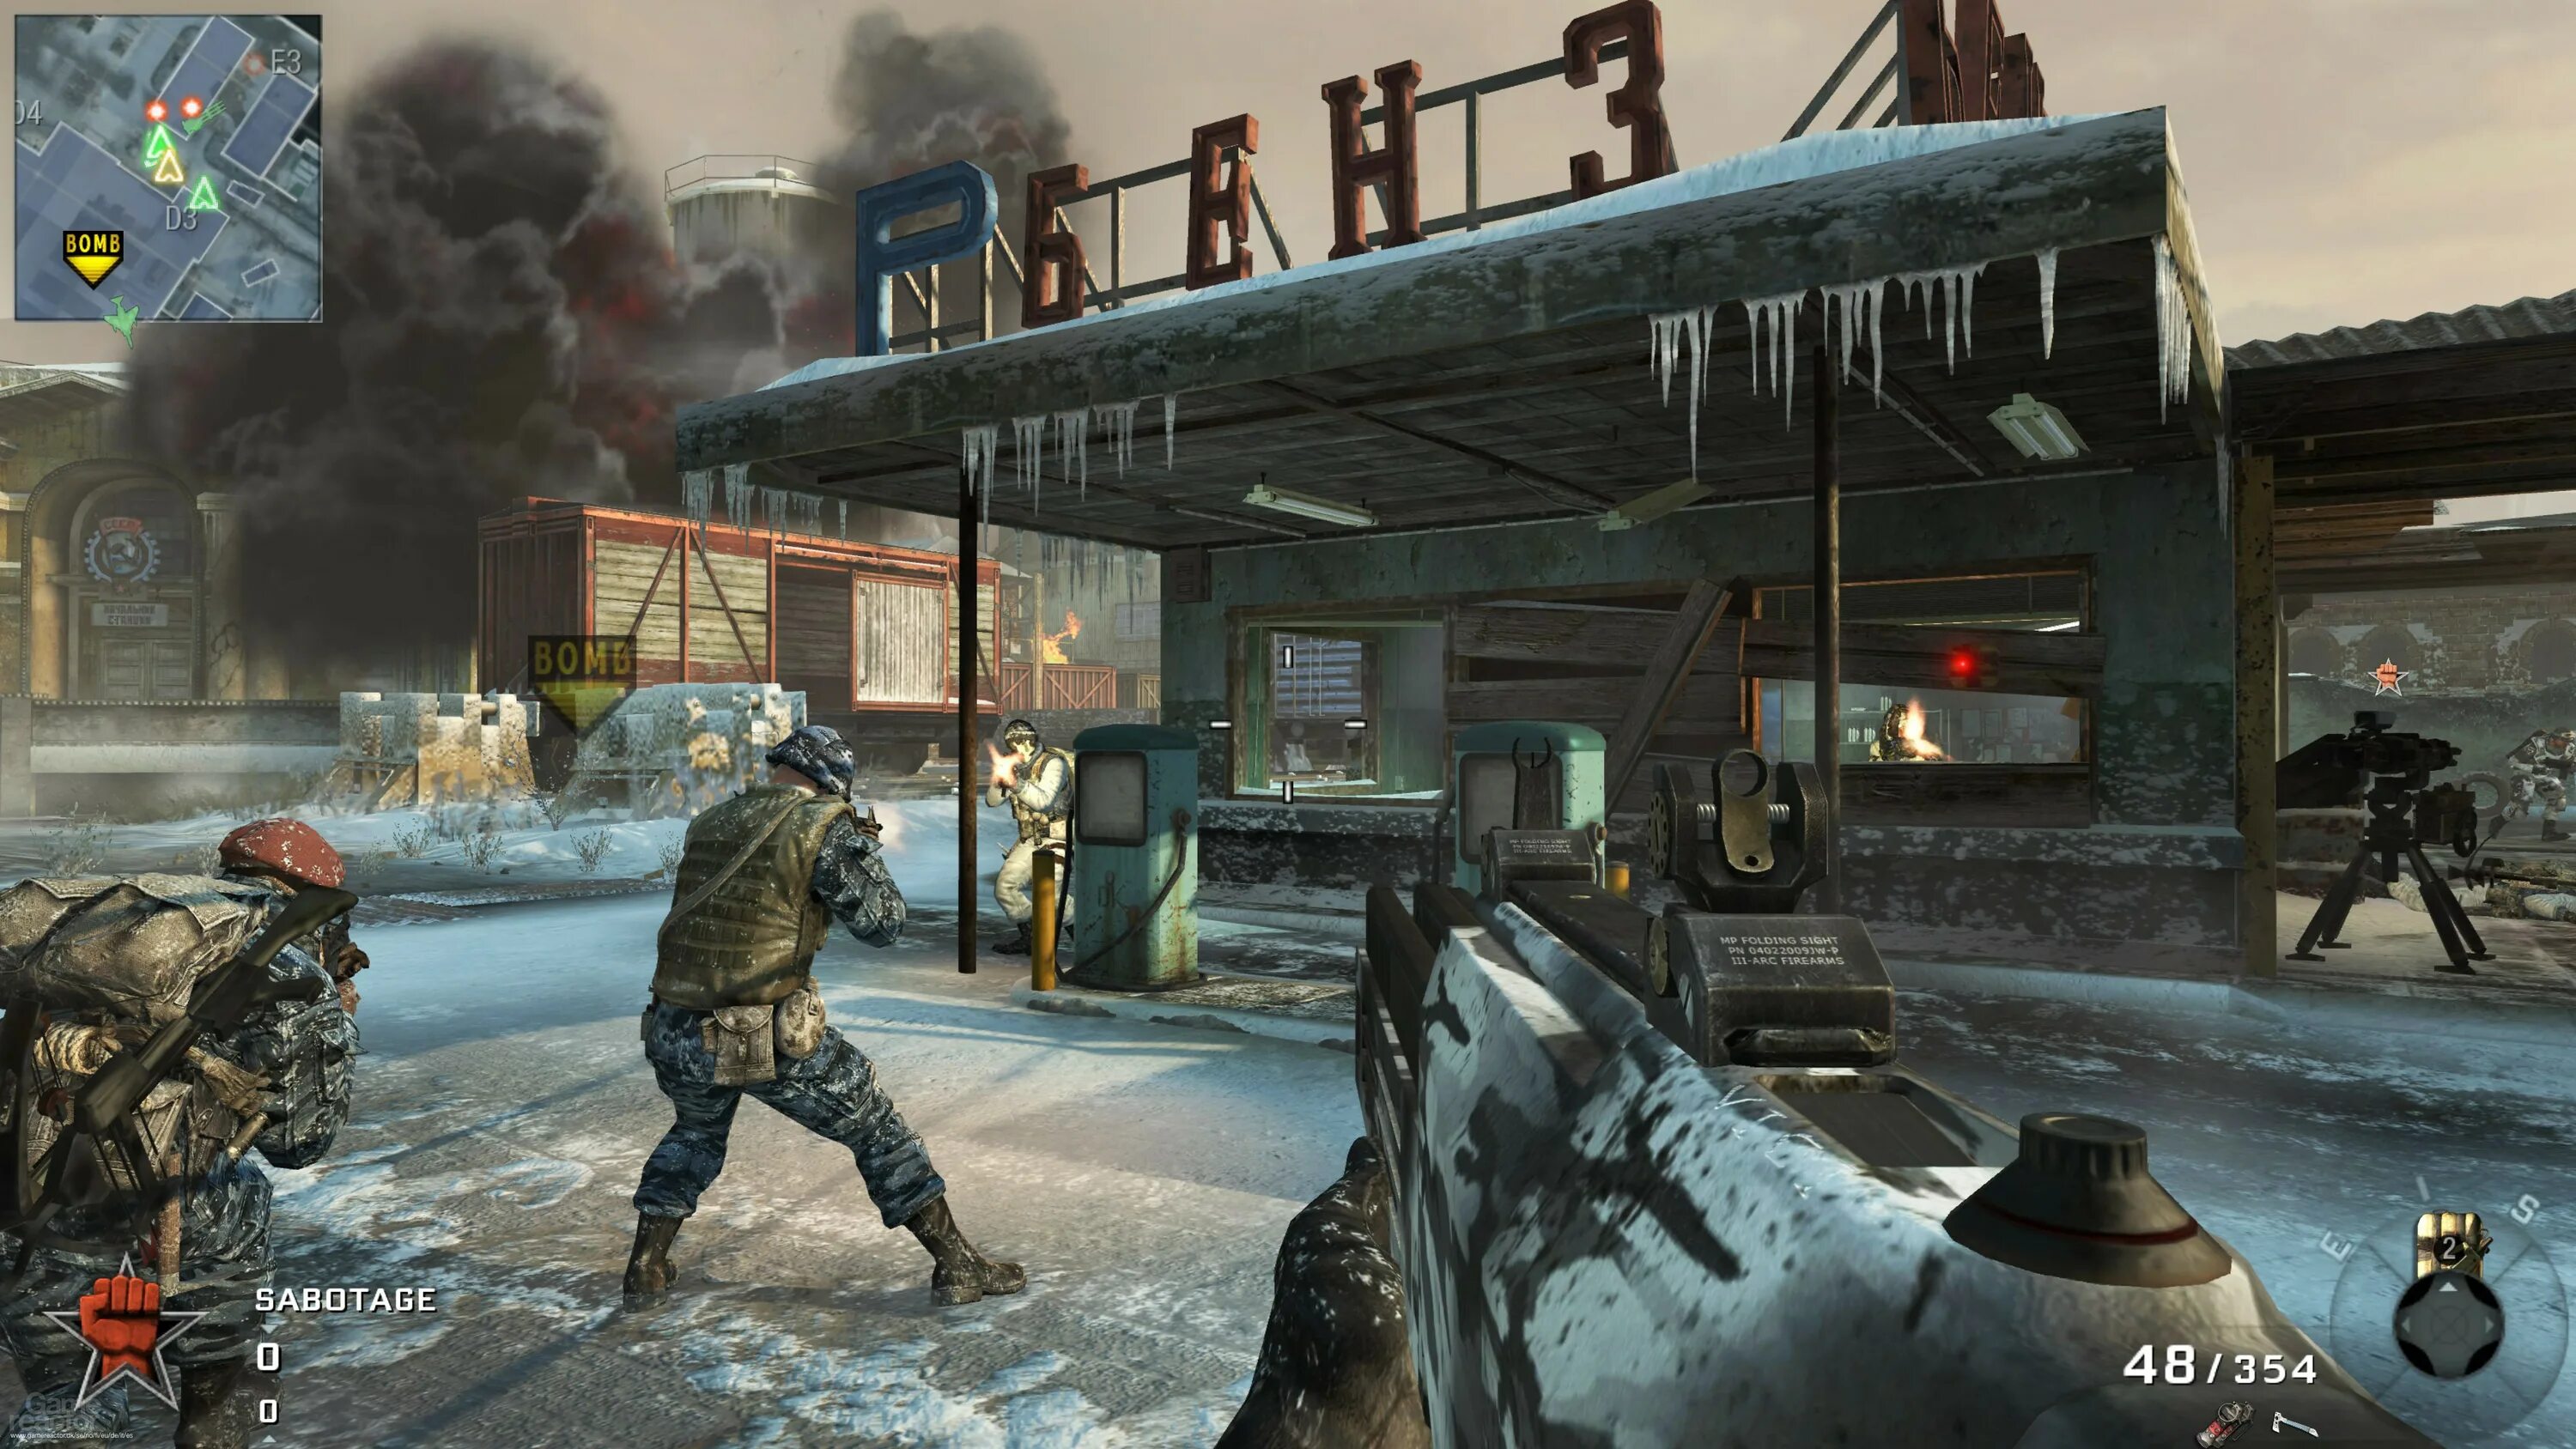 Список игр с лучшим сюжетом. Black ops 1. Call of Duty ops 1. Кал оф дьюти Black ops 1. Call of Duty Black ops геймплей 2010.